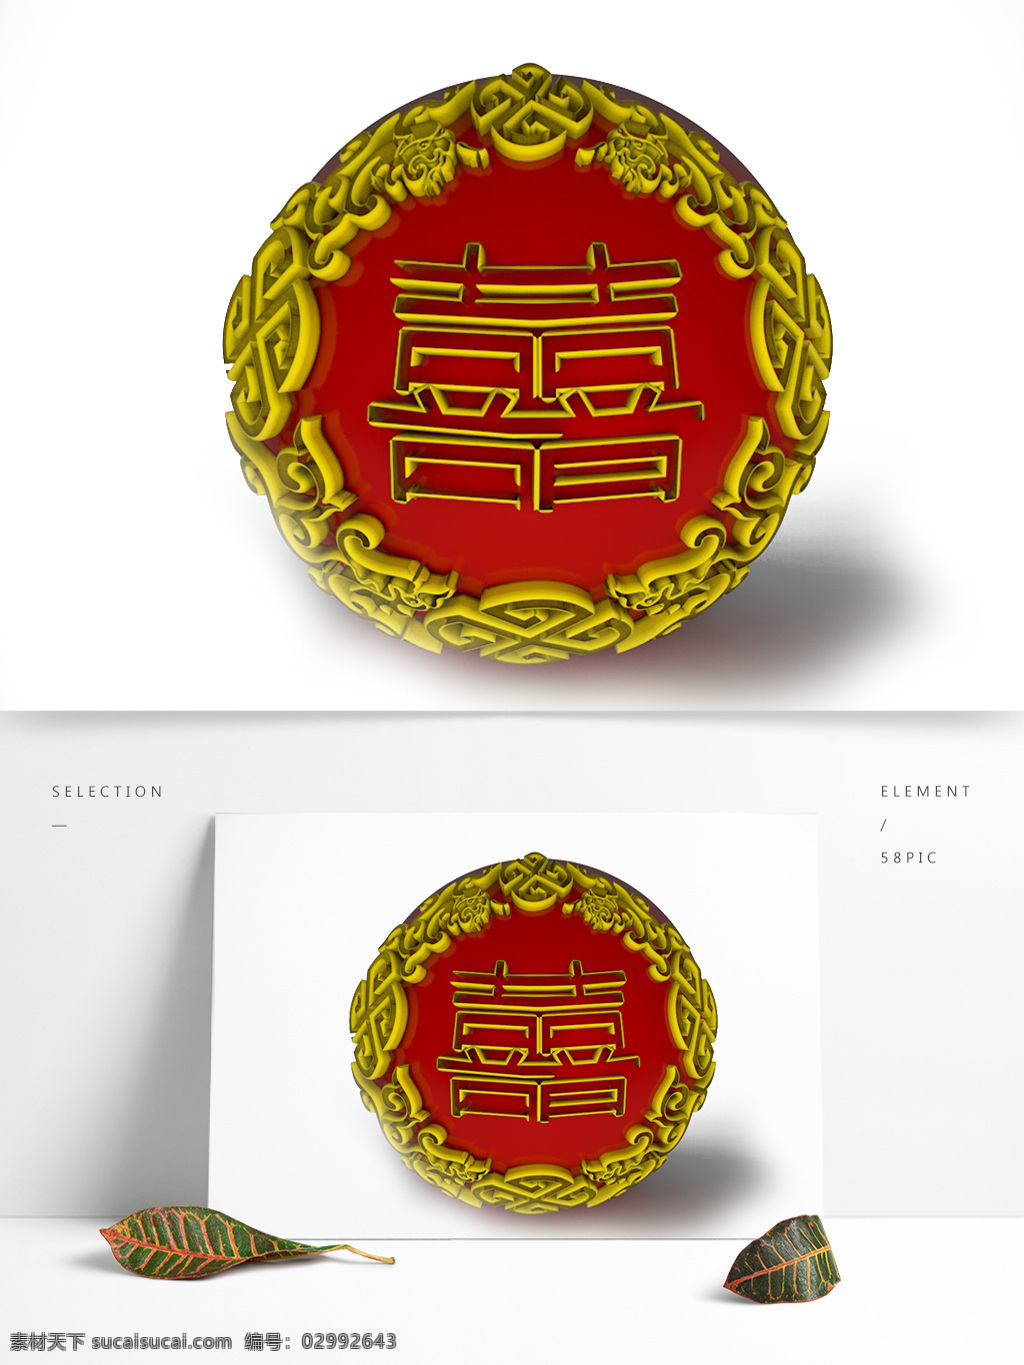 双喜临门 中国 格式 swf素材 大红 元素 装饰图案